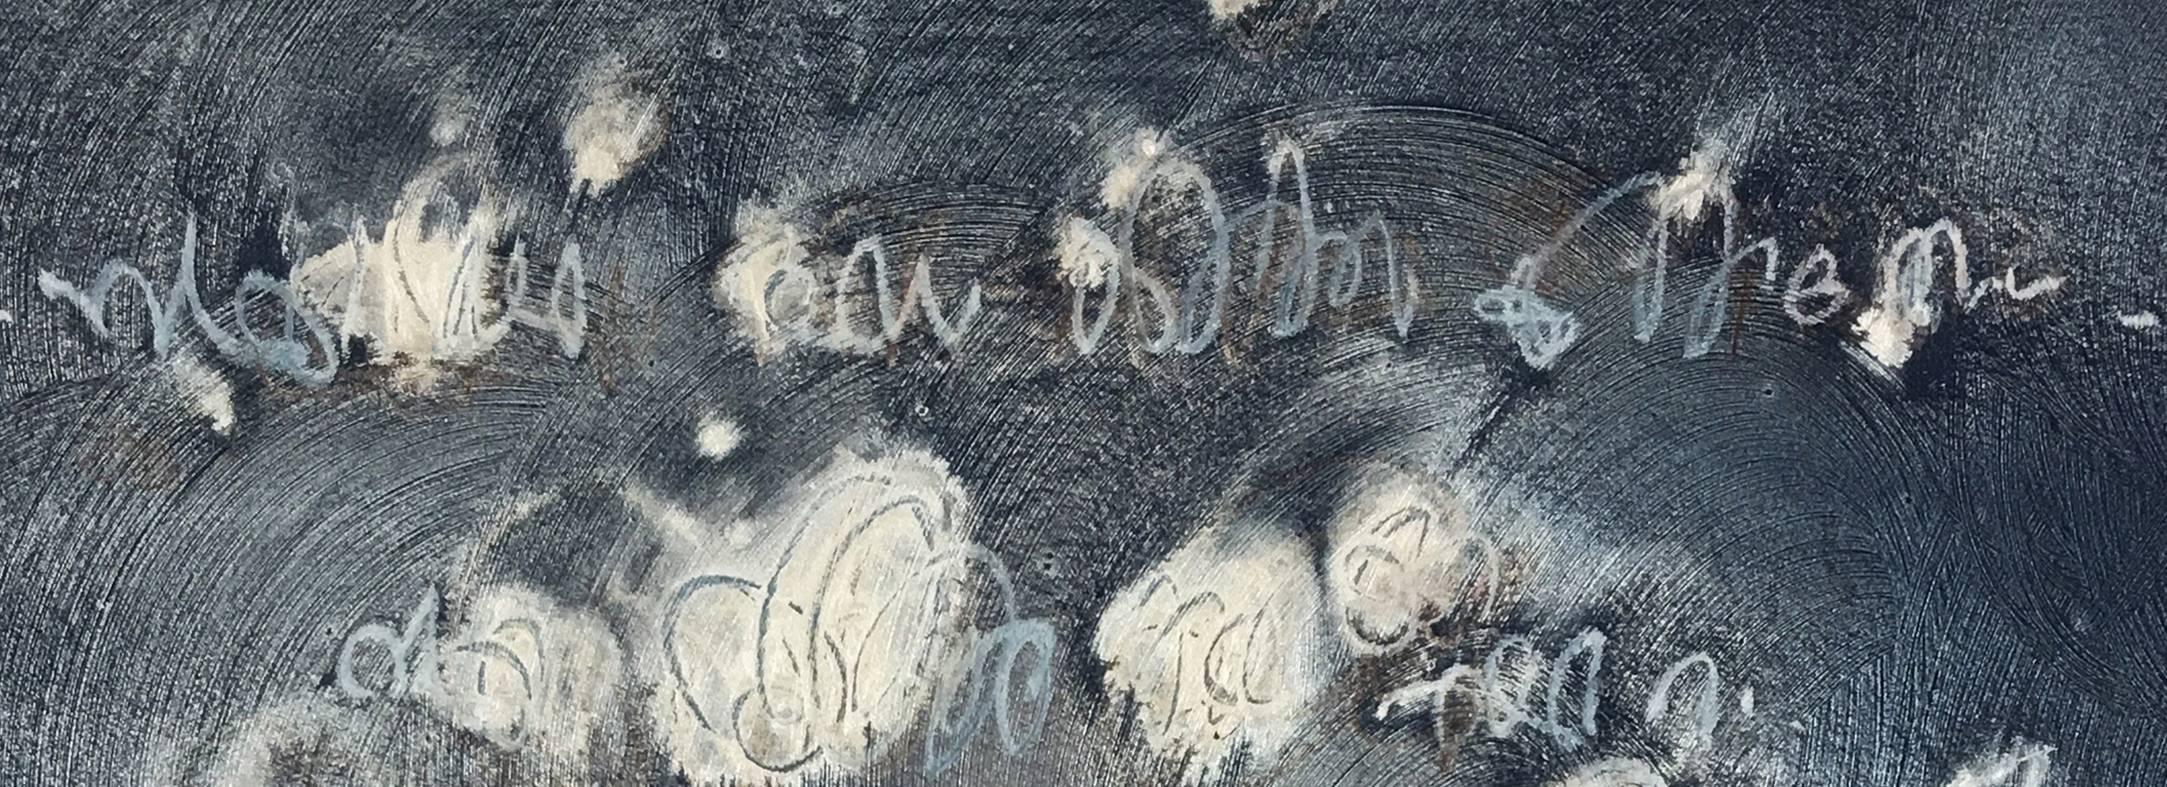 Elemente - Vivid, blau, grau, silber, schillernd abstrakt, Acryl auf Leinwand (Zeitgenössisch), Painting, von Alice Teichert